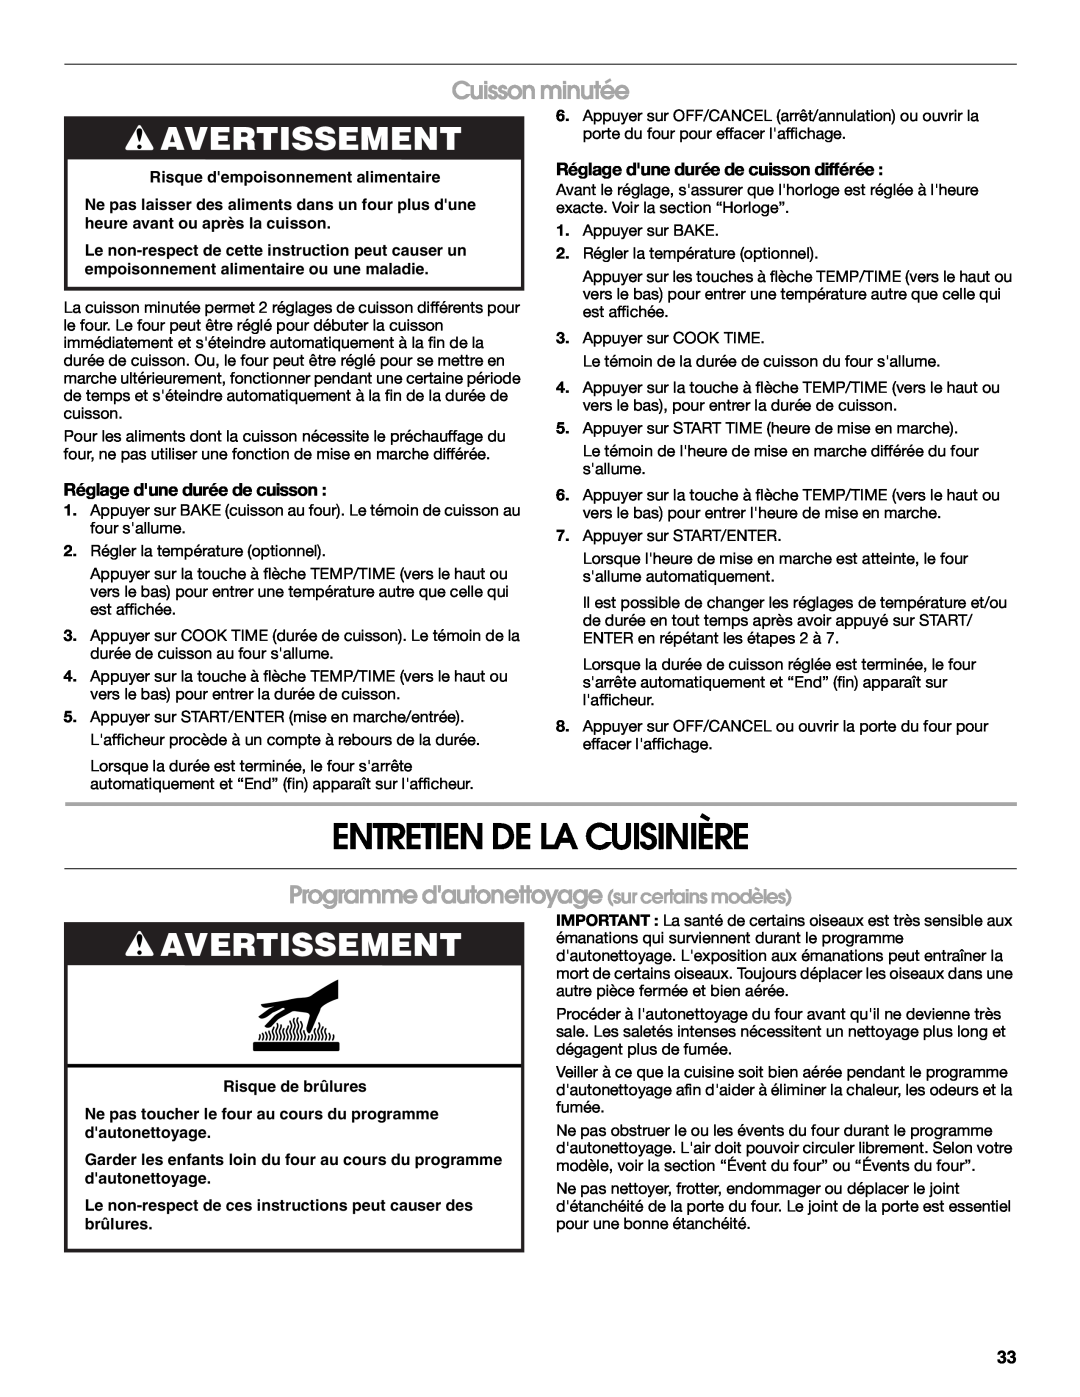 Whirlpool W10017750B2 manual Entretien De La Cuisinière, Cuisson minutée, Programme dautonettoyage sur certains modèles 